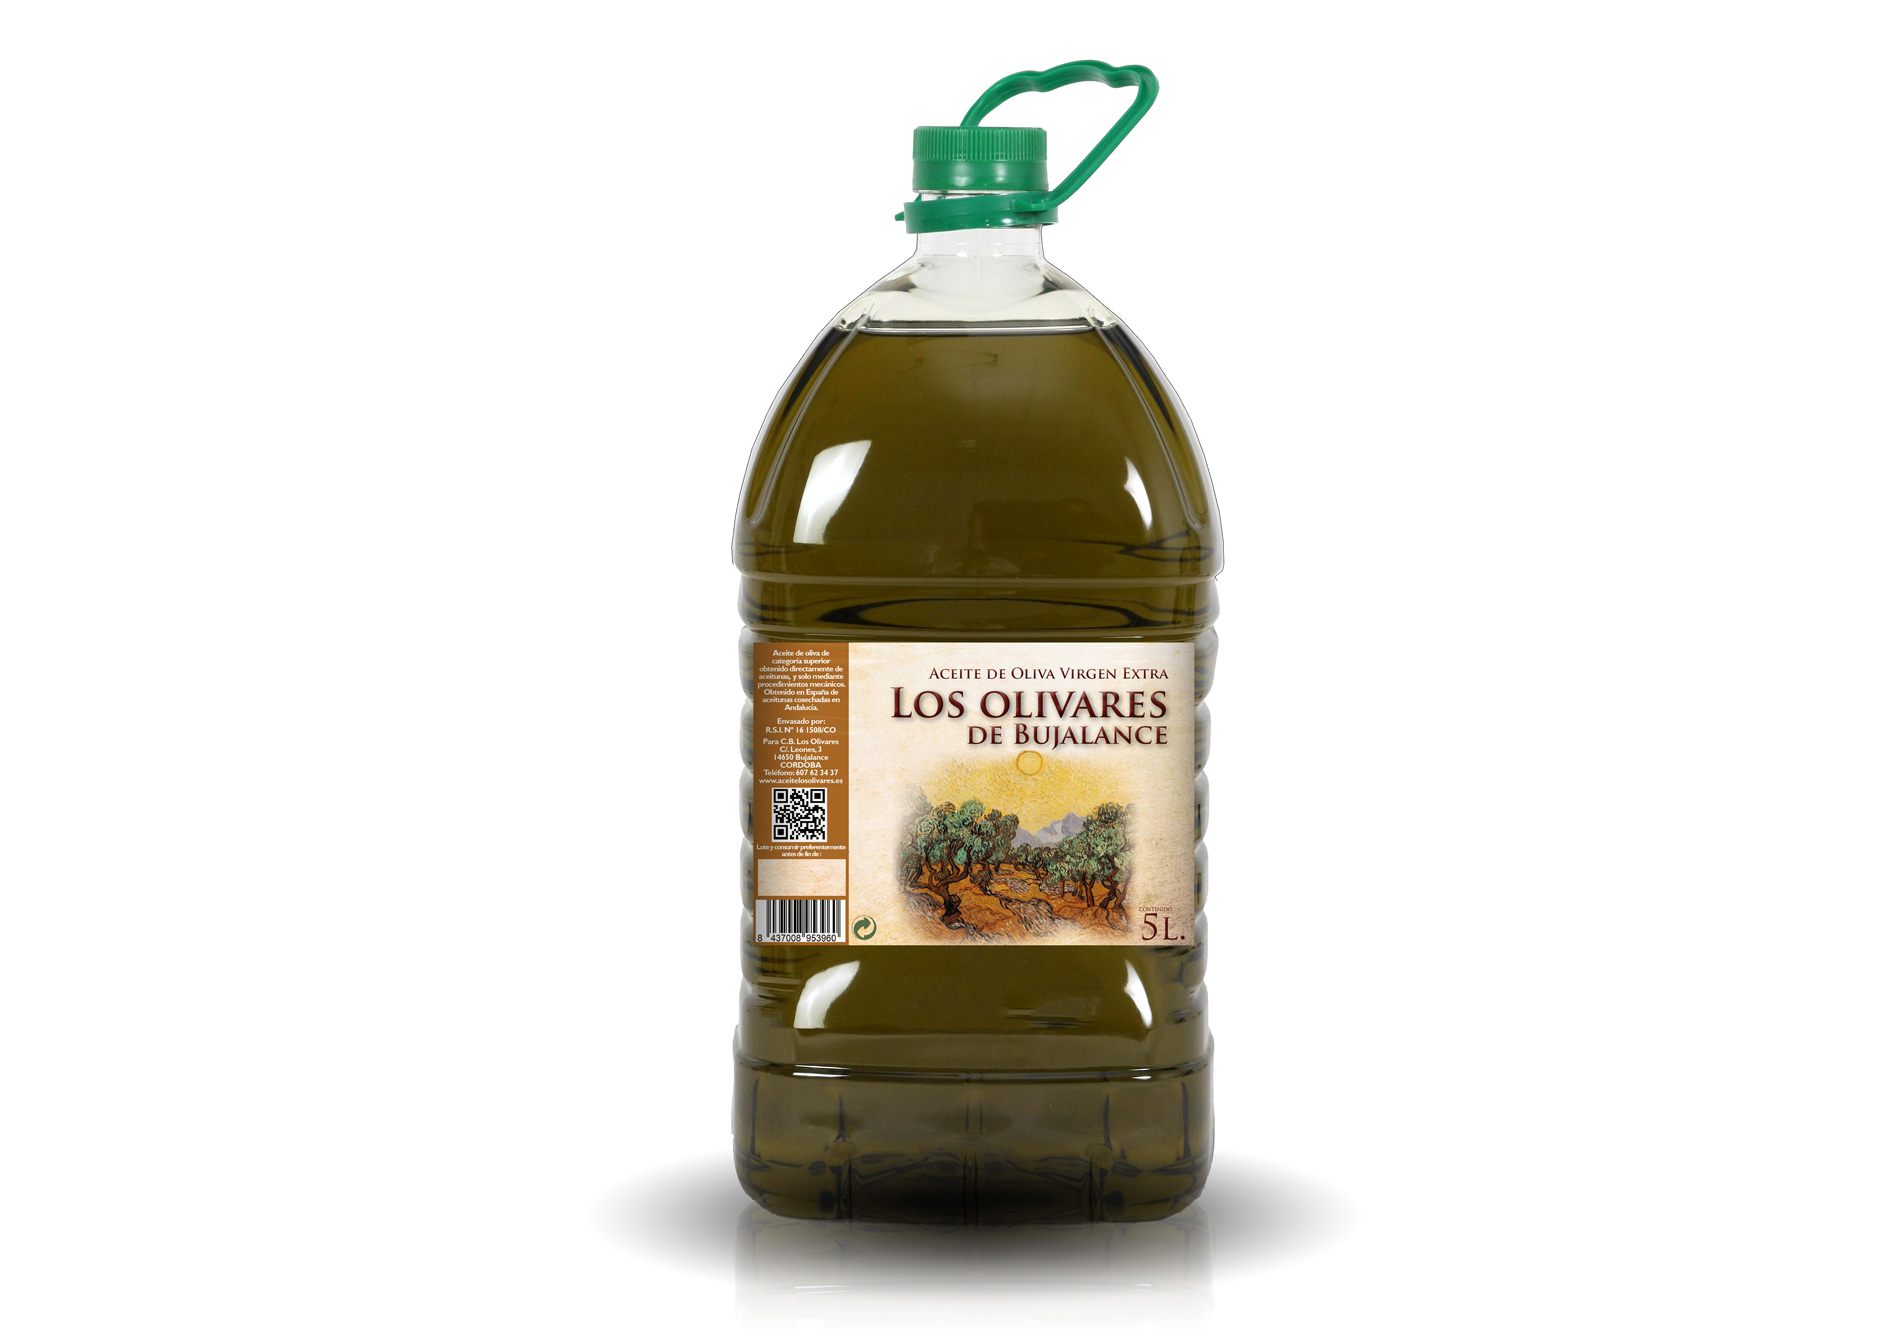 Diseño gráfico y creativo de etiquetas de aceite de oliva virgen extra para la marca LOS OLIVARES DE BUJALANCE garrafa de aceite de 5 litros